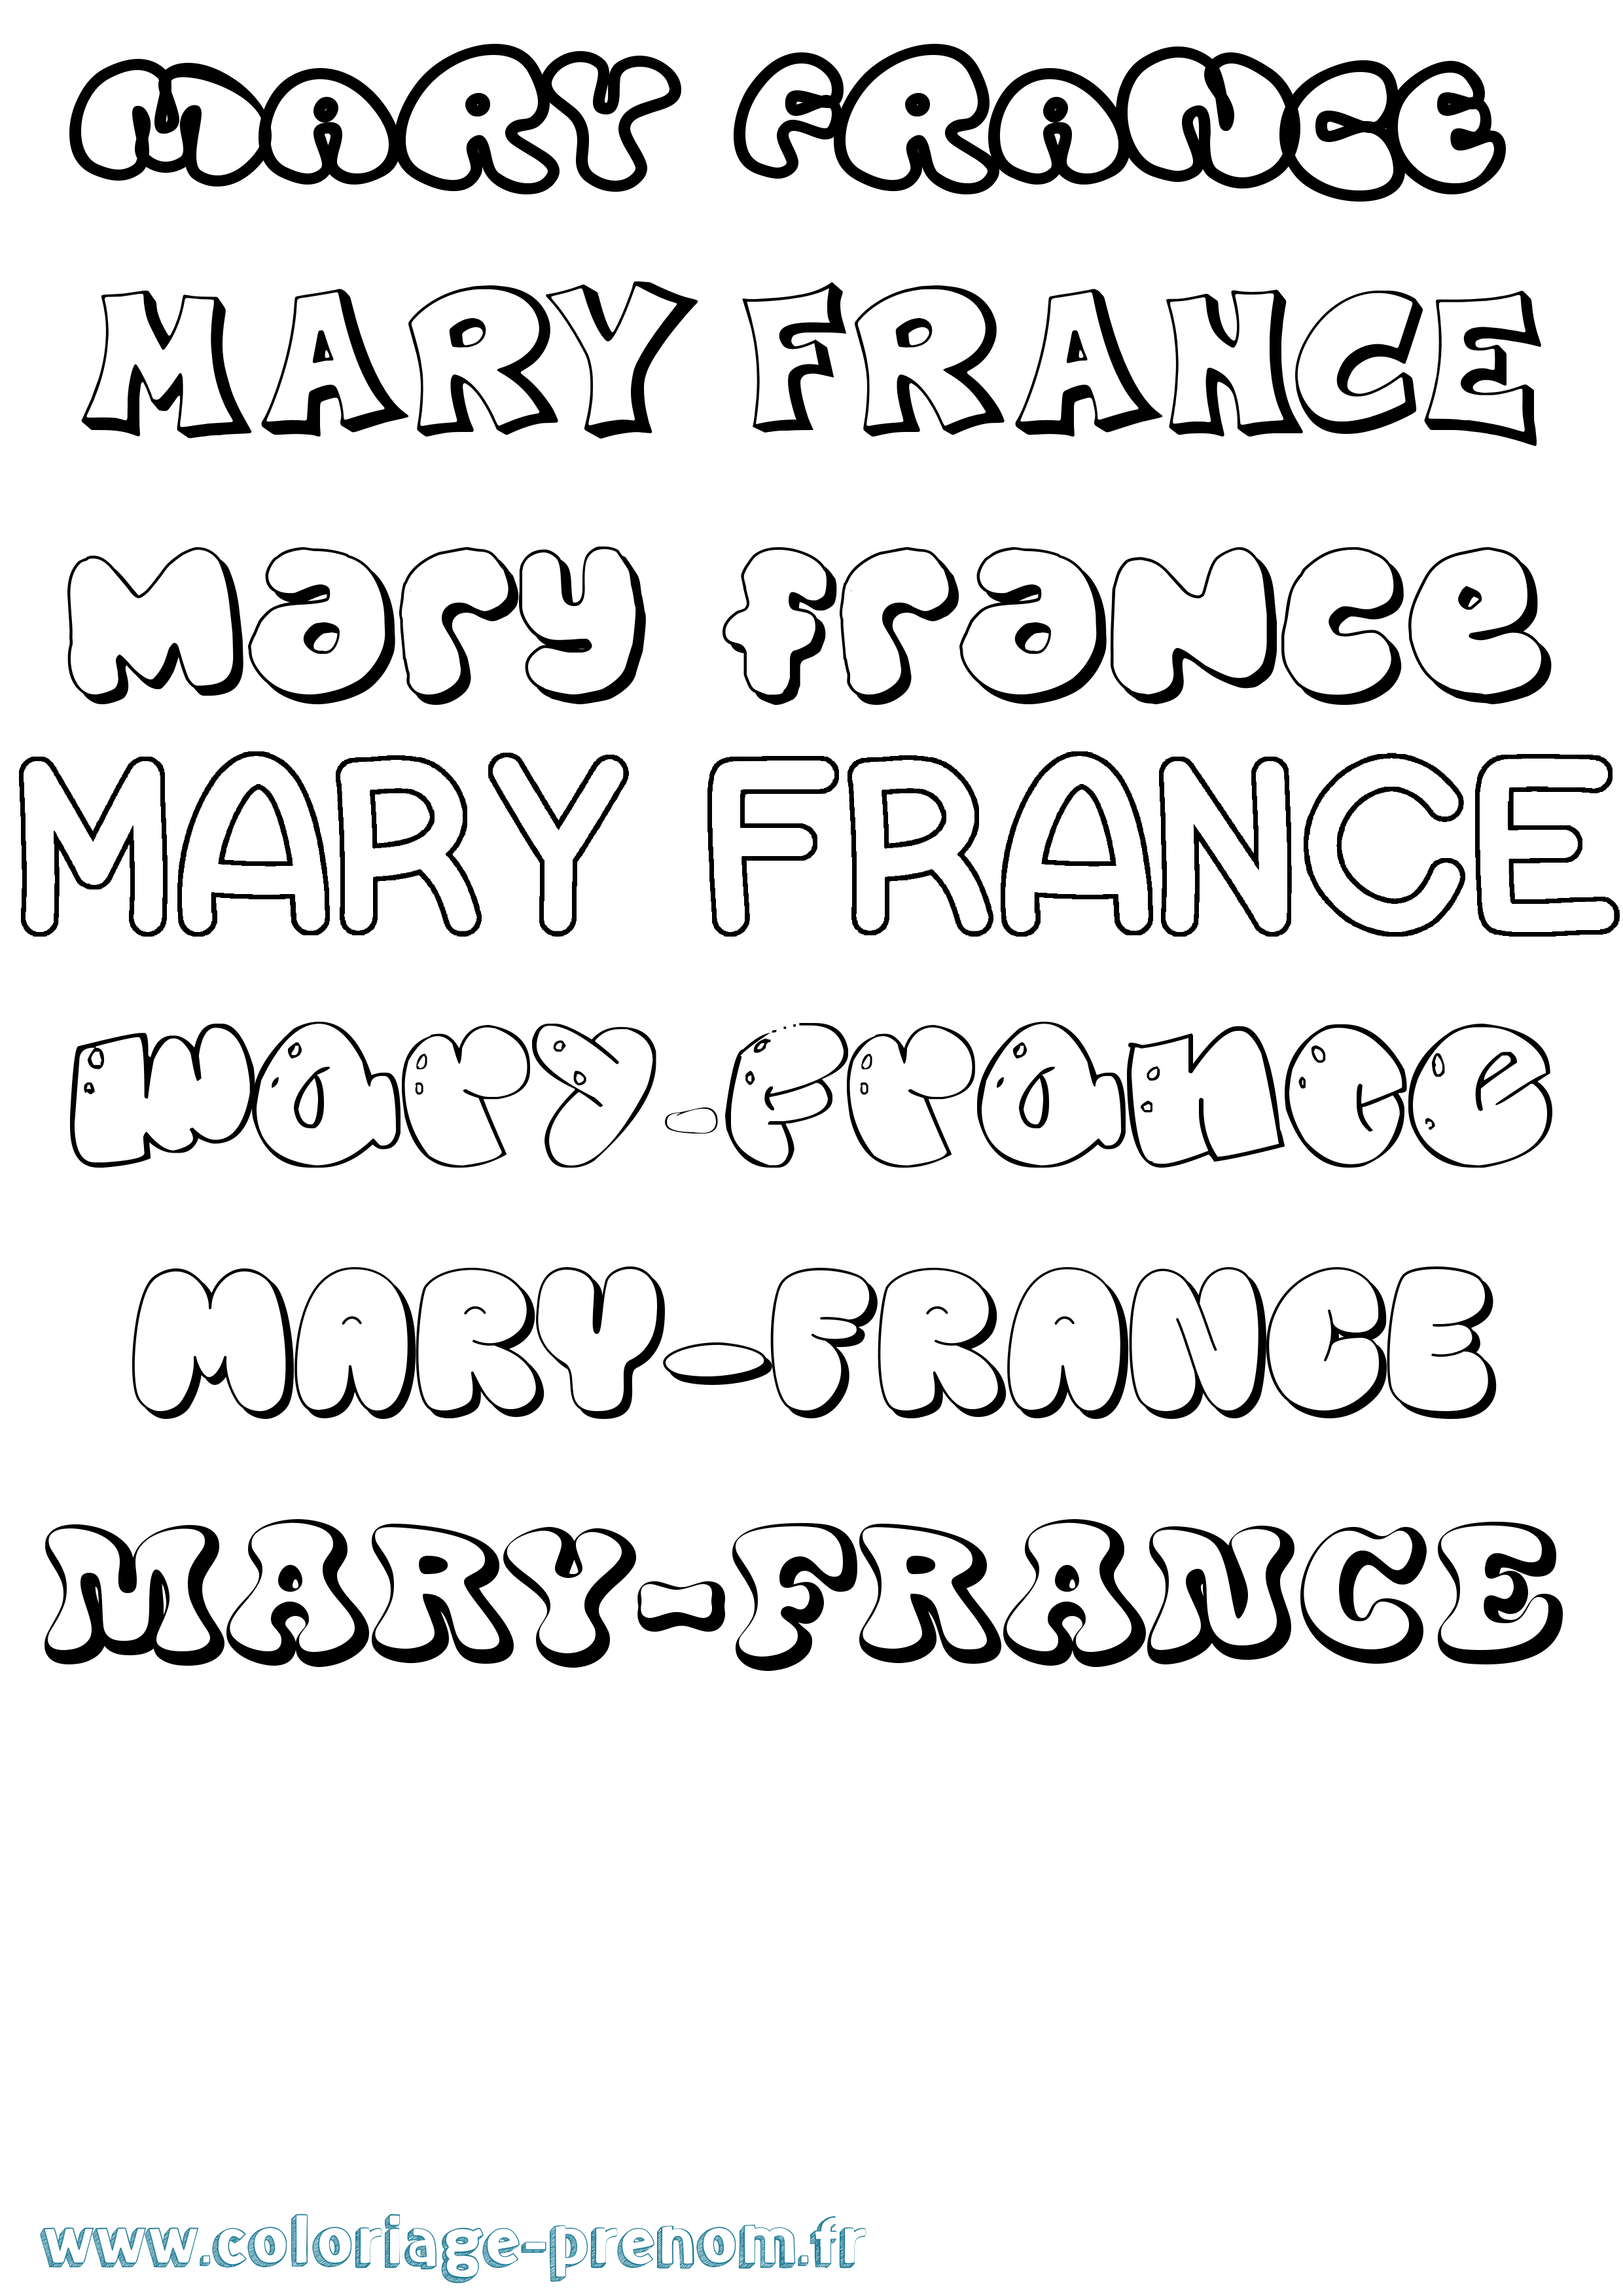 Coloriage prénom Mary-France Bubble